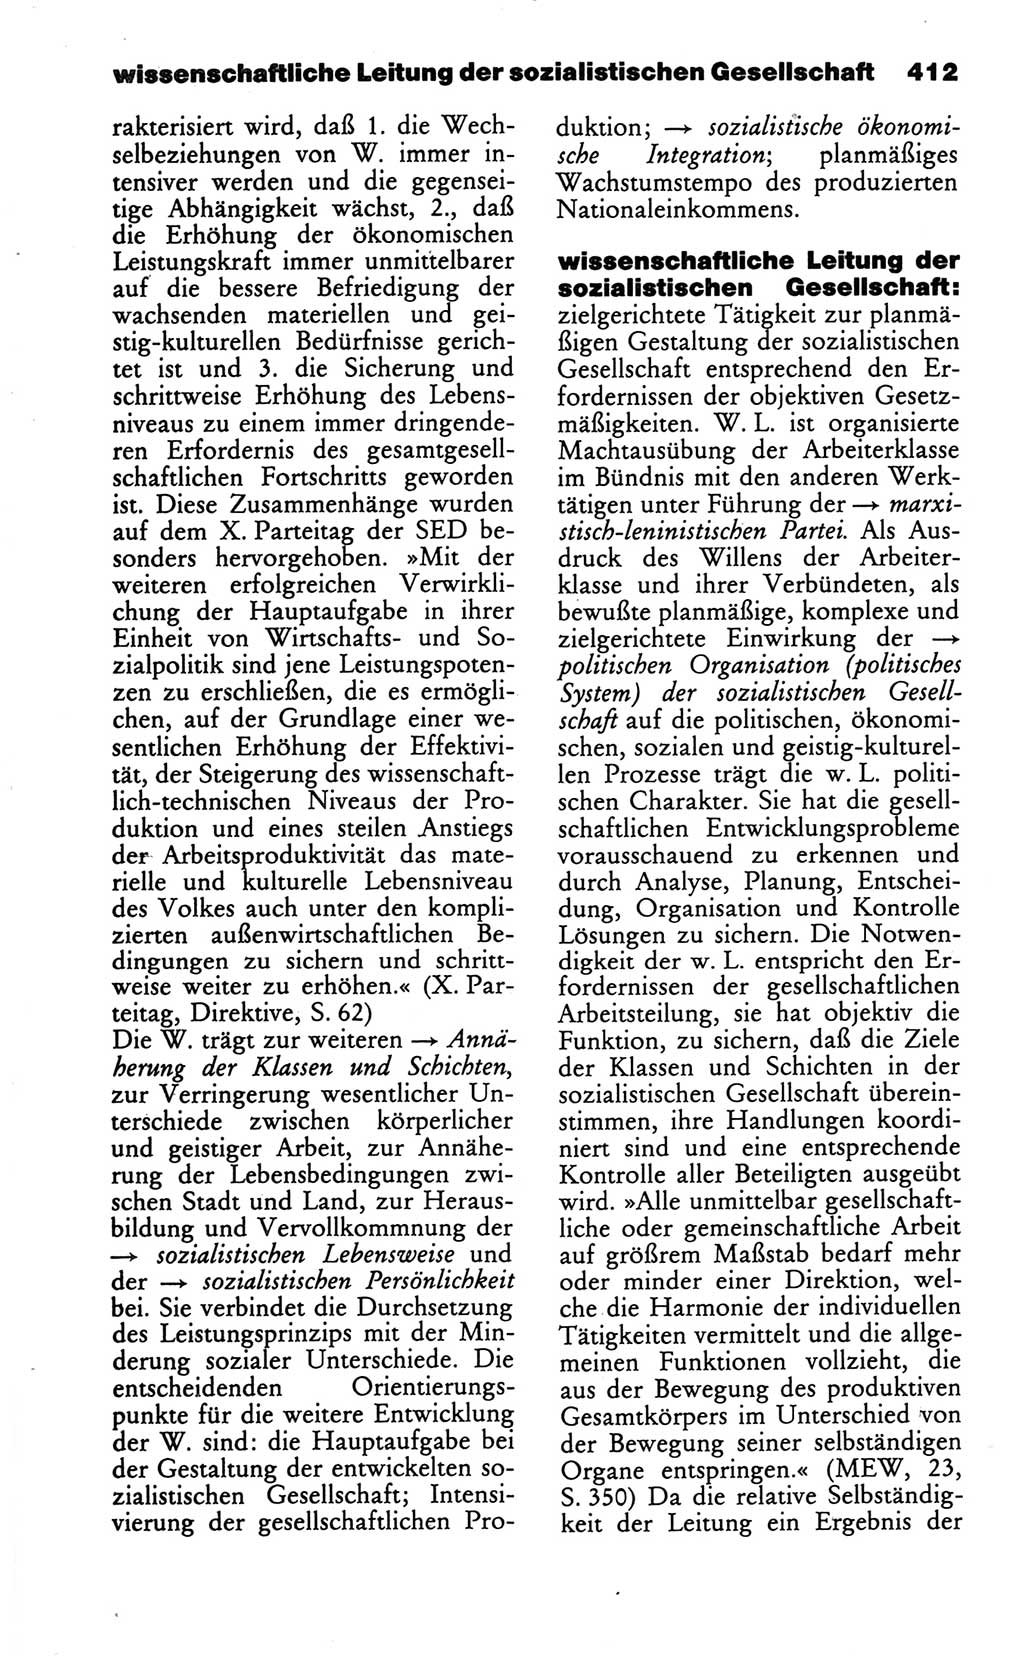 Wörterbuch des wissenschaftlichen Kommunismus [Deutsche Demokratische Republik (DDR)] 1986, Seite 412 (Wb. wiss. Komm. DDR 1986, S. 412)